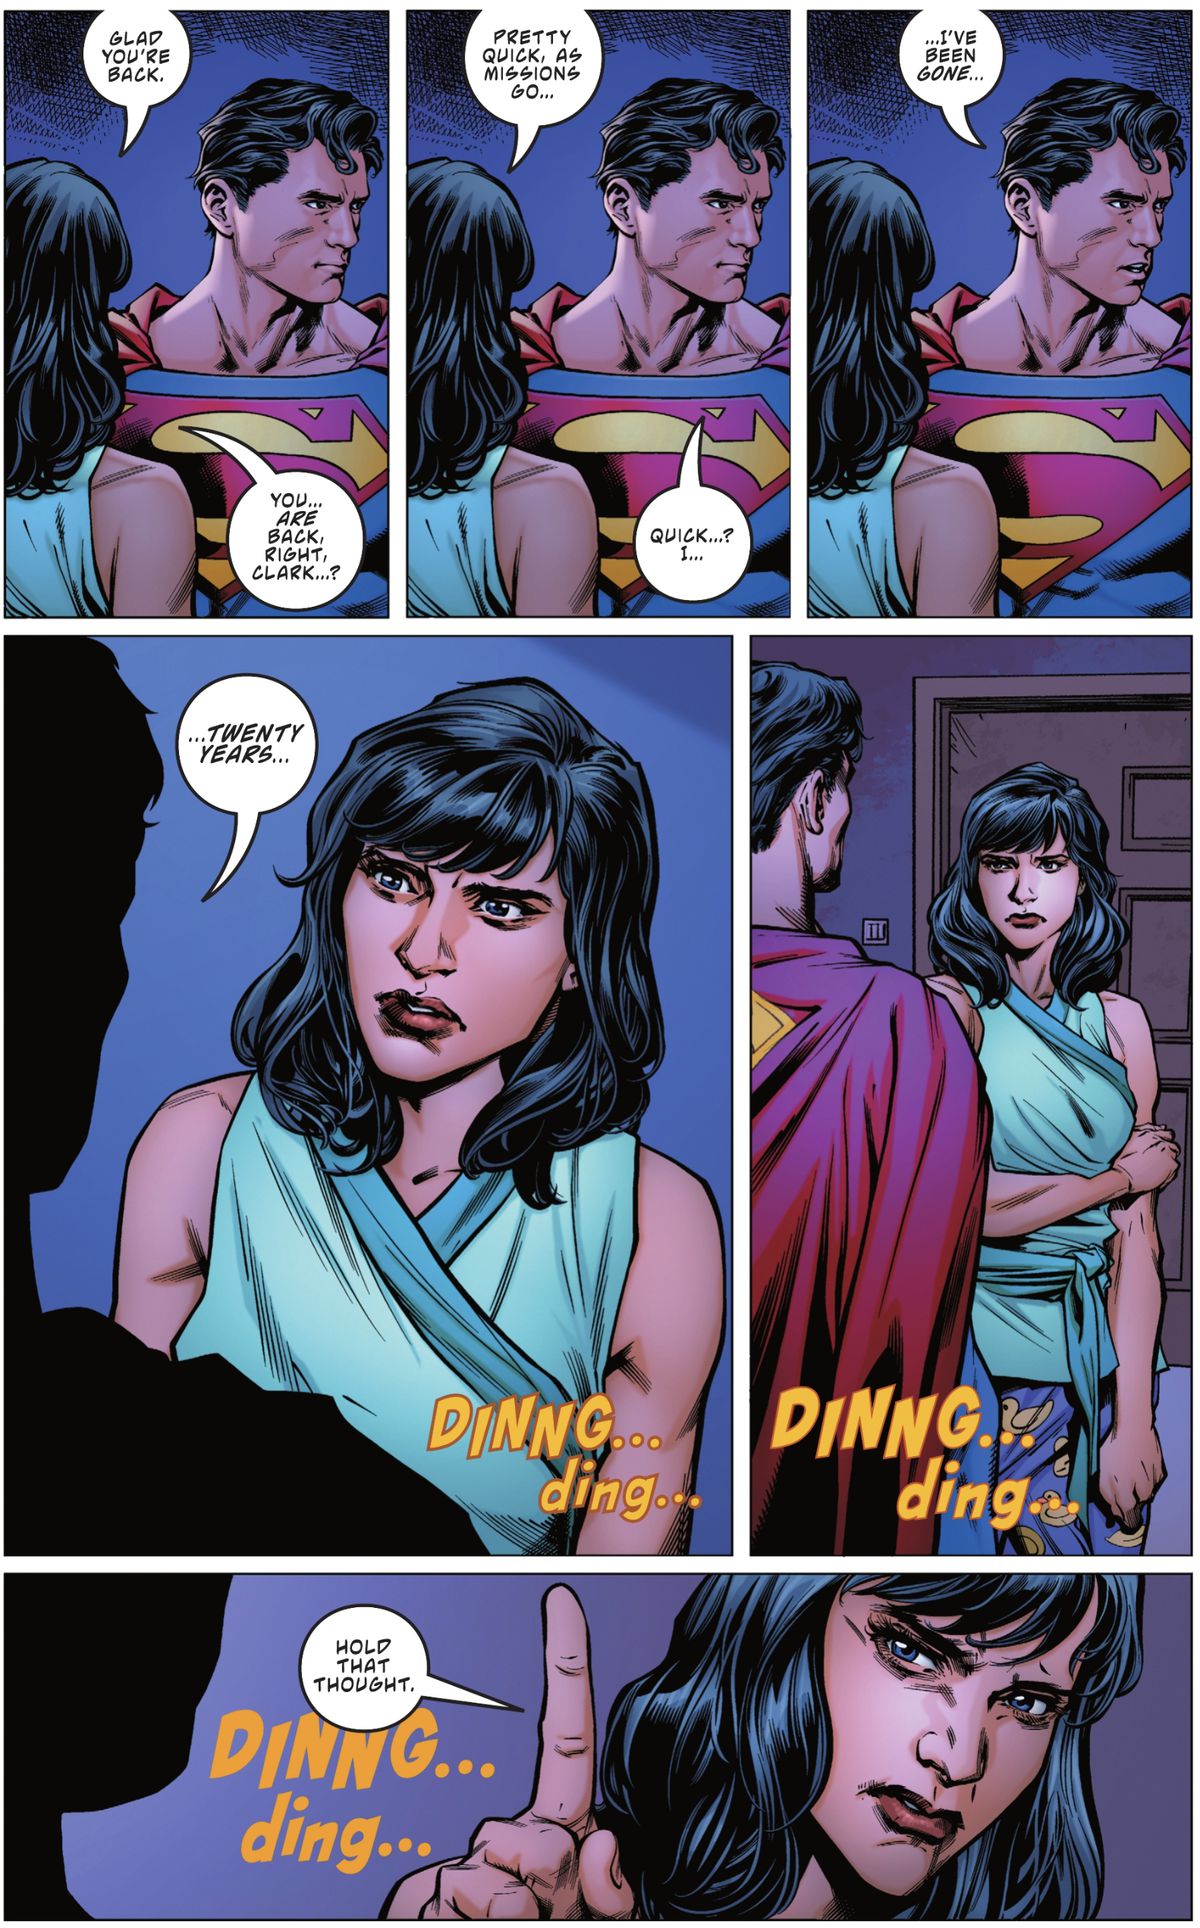 »Vrnil si se,« pravi Lois Lane šokiranemu Supermanu, ki miruje v njihovem stanovanju. "Precej hitro, kot gredo misije." Po dolgi tišini končno reče »Hitro? Jaz ... že dvajset let me ni." Nato zazvoni zvonec v Supermanu: Izgubljeni #1 (2023).